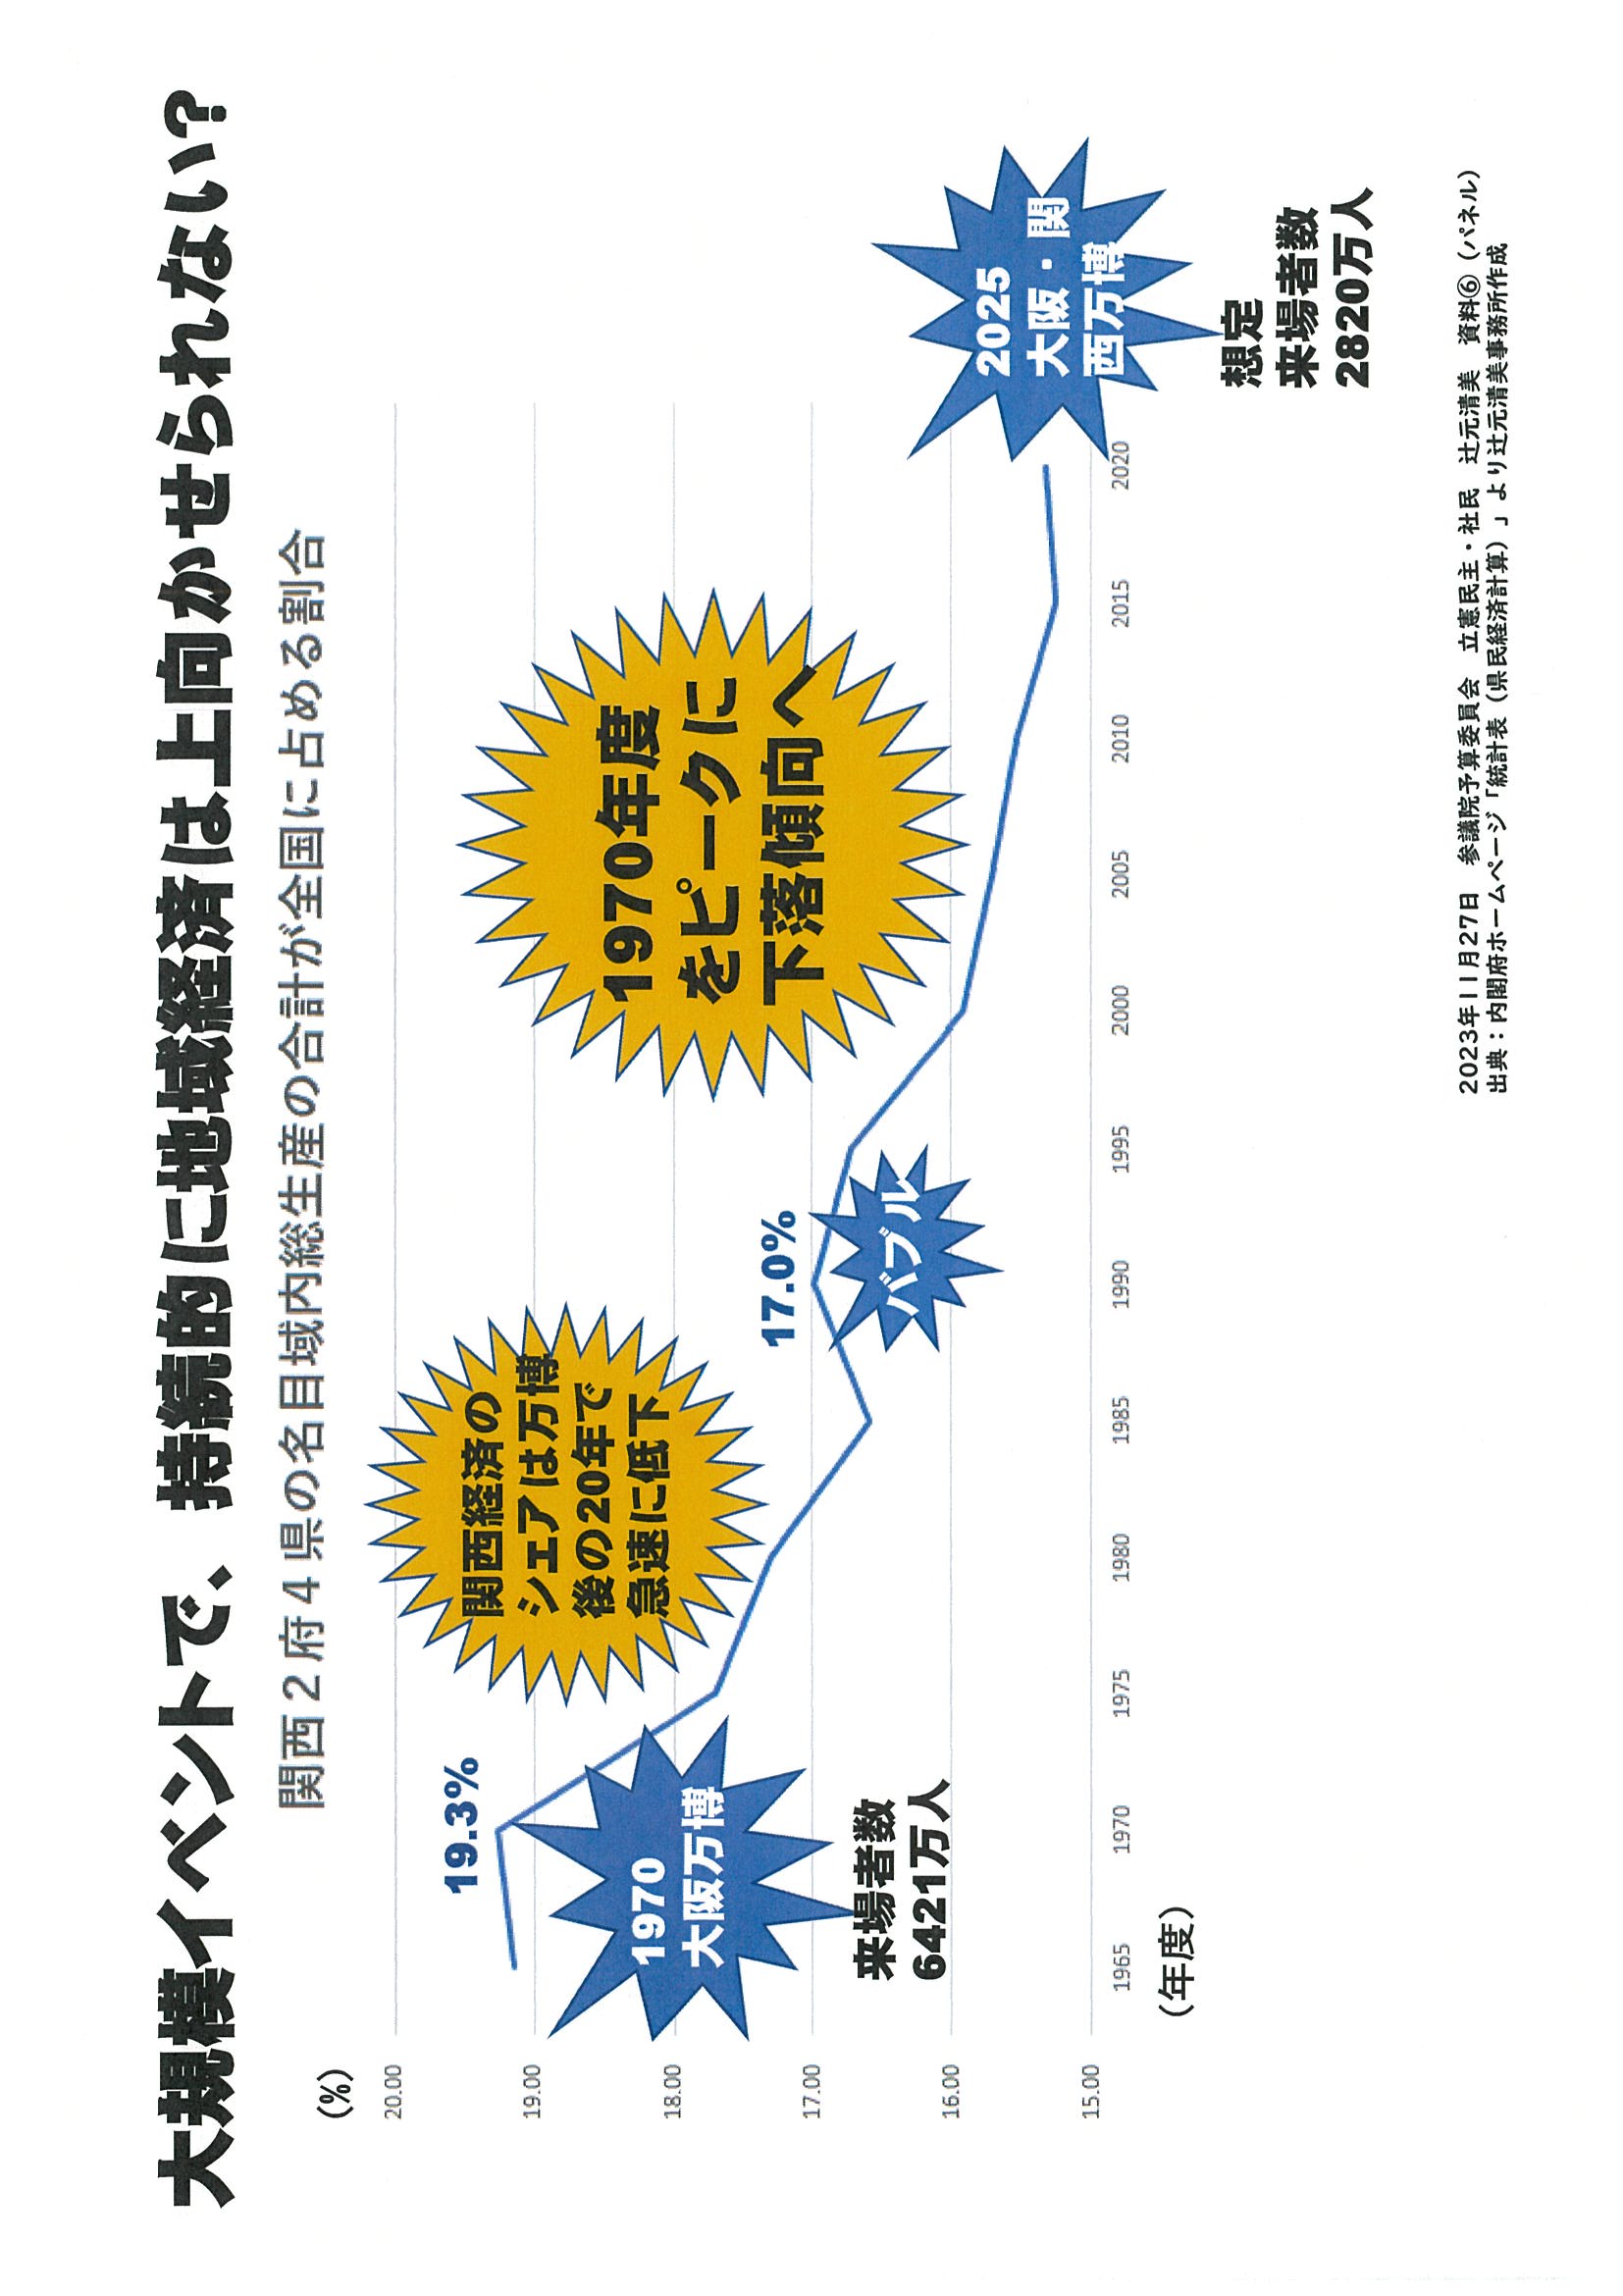 関西2府4県の名目域内総生産の合計が全国に占める割合.jpg